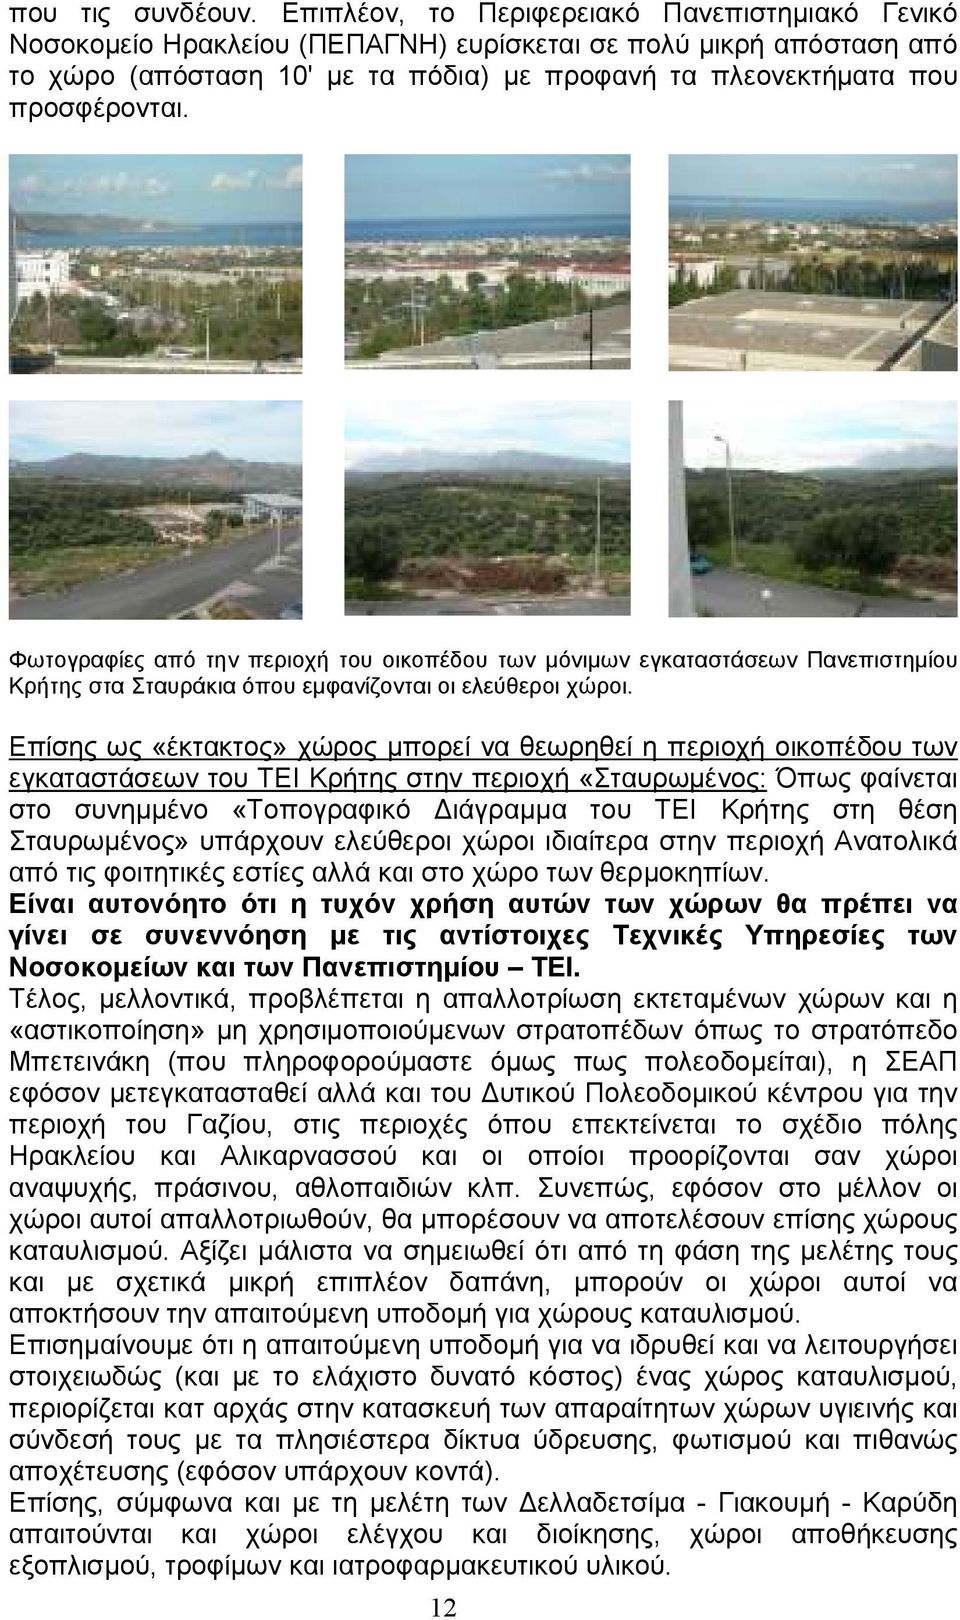 Φωτογραφίες από την περιοχή του οικοπέδου των µόνιµων εγκαταστάσεων Πανεπιστηµίου Κρήτης στα Σταυράκια όπου εµφανίζονται οι ελεύθεροι χώροι.